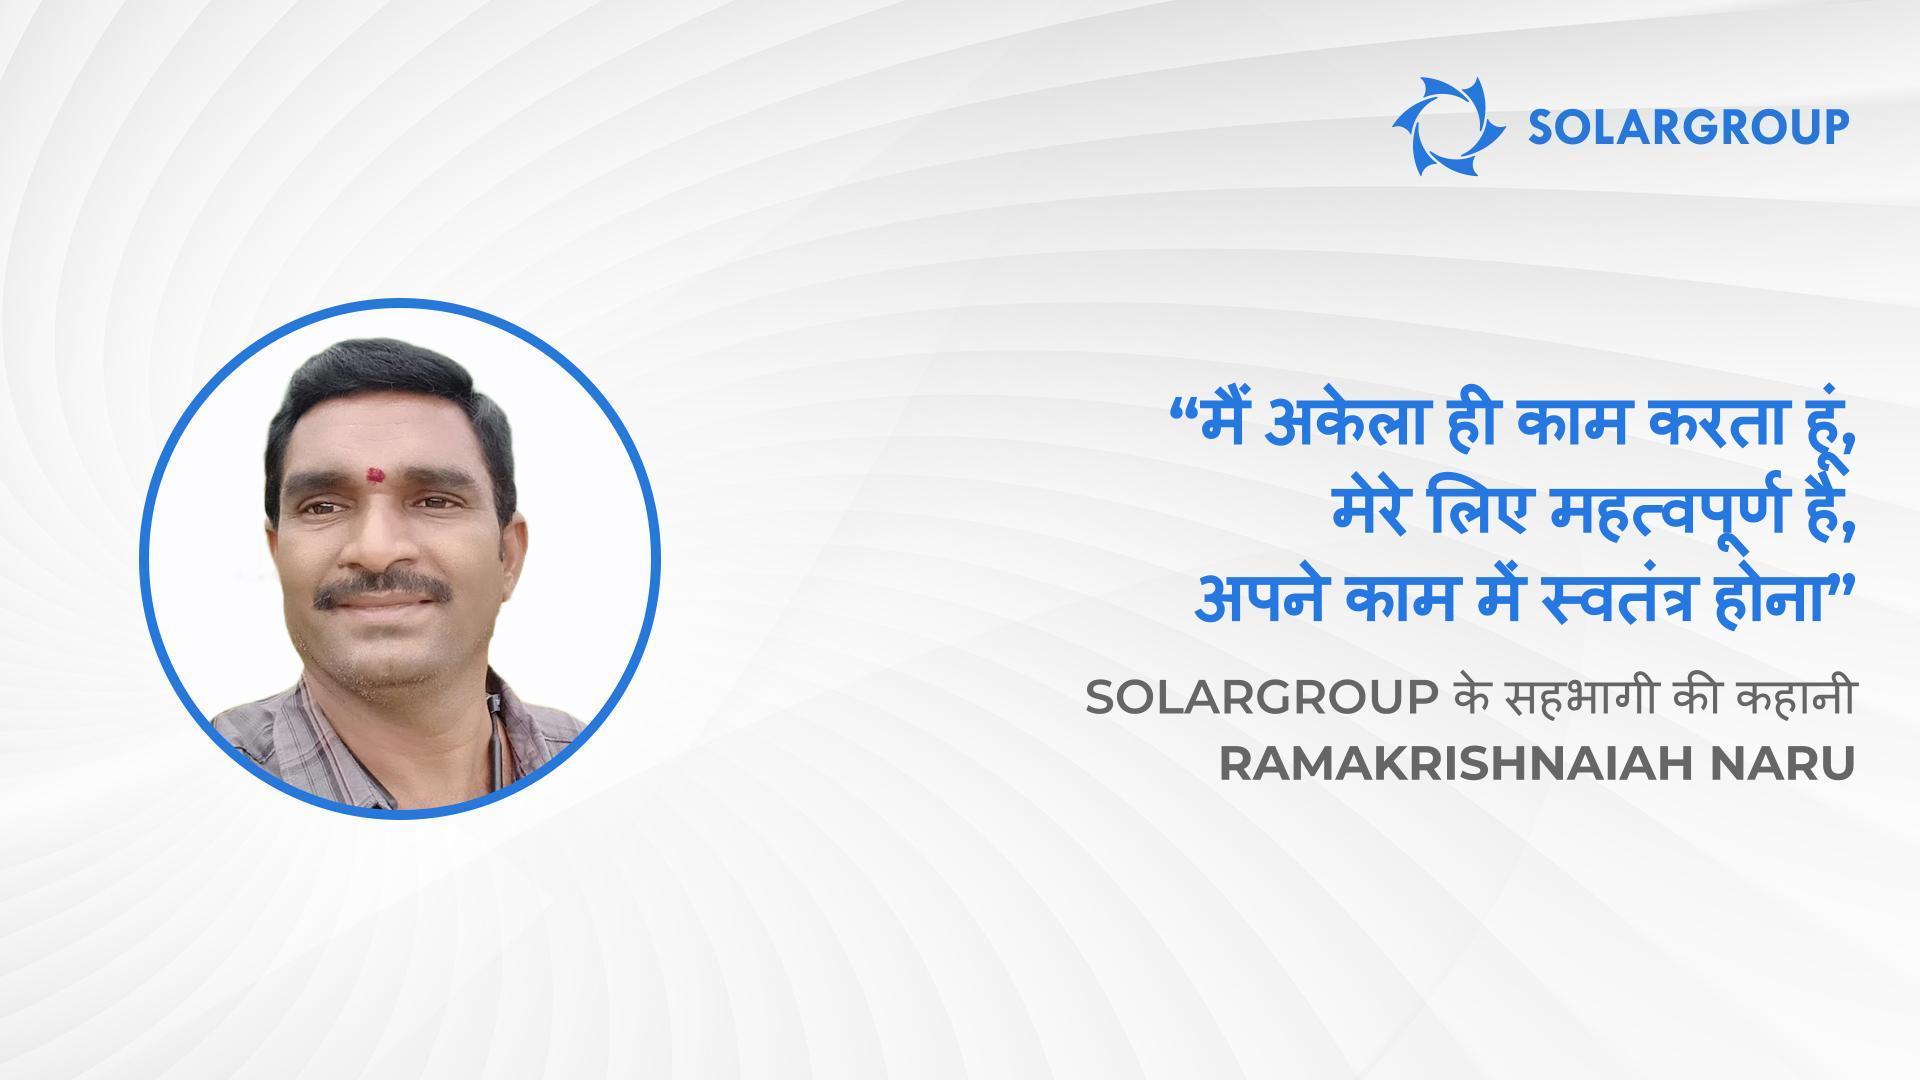 आपने SOLARGROUP को चुन कर सबसे बेहतर चयन किया है! | SOLARGROUP के सहभागी की कहानी Ramakrishnaiah Naru